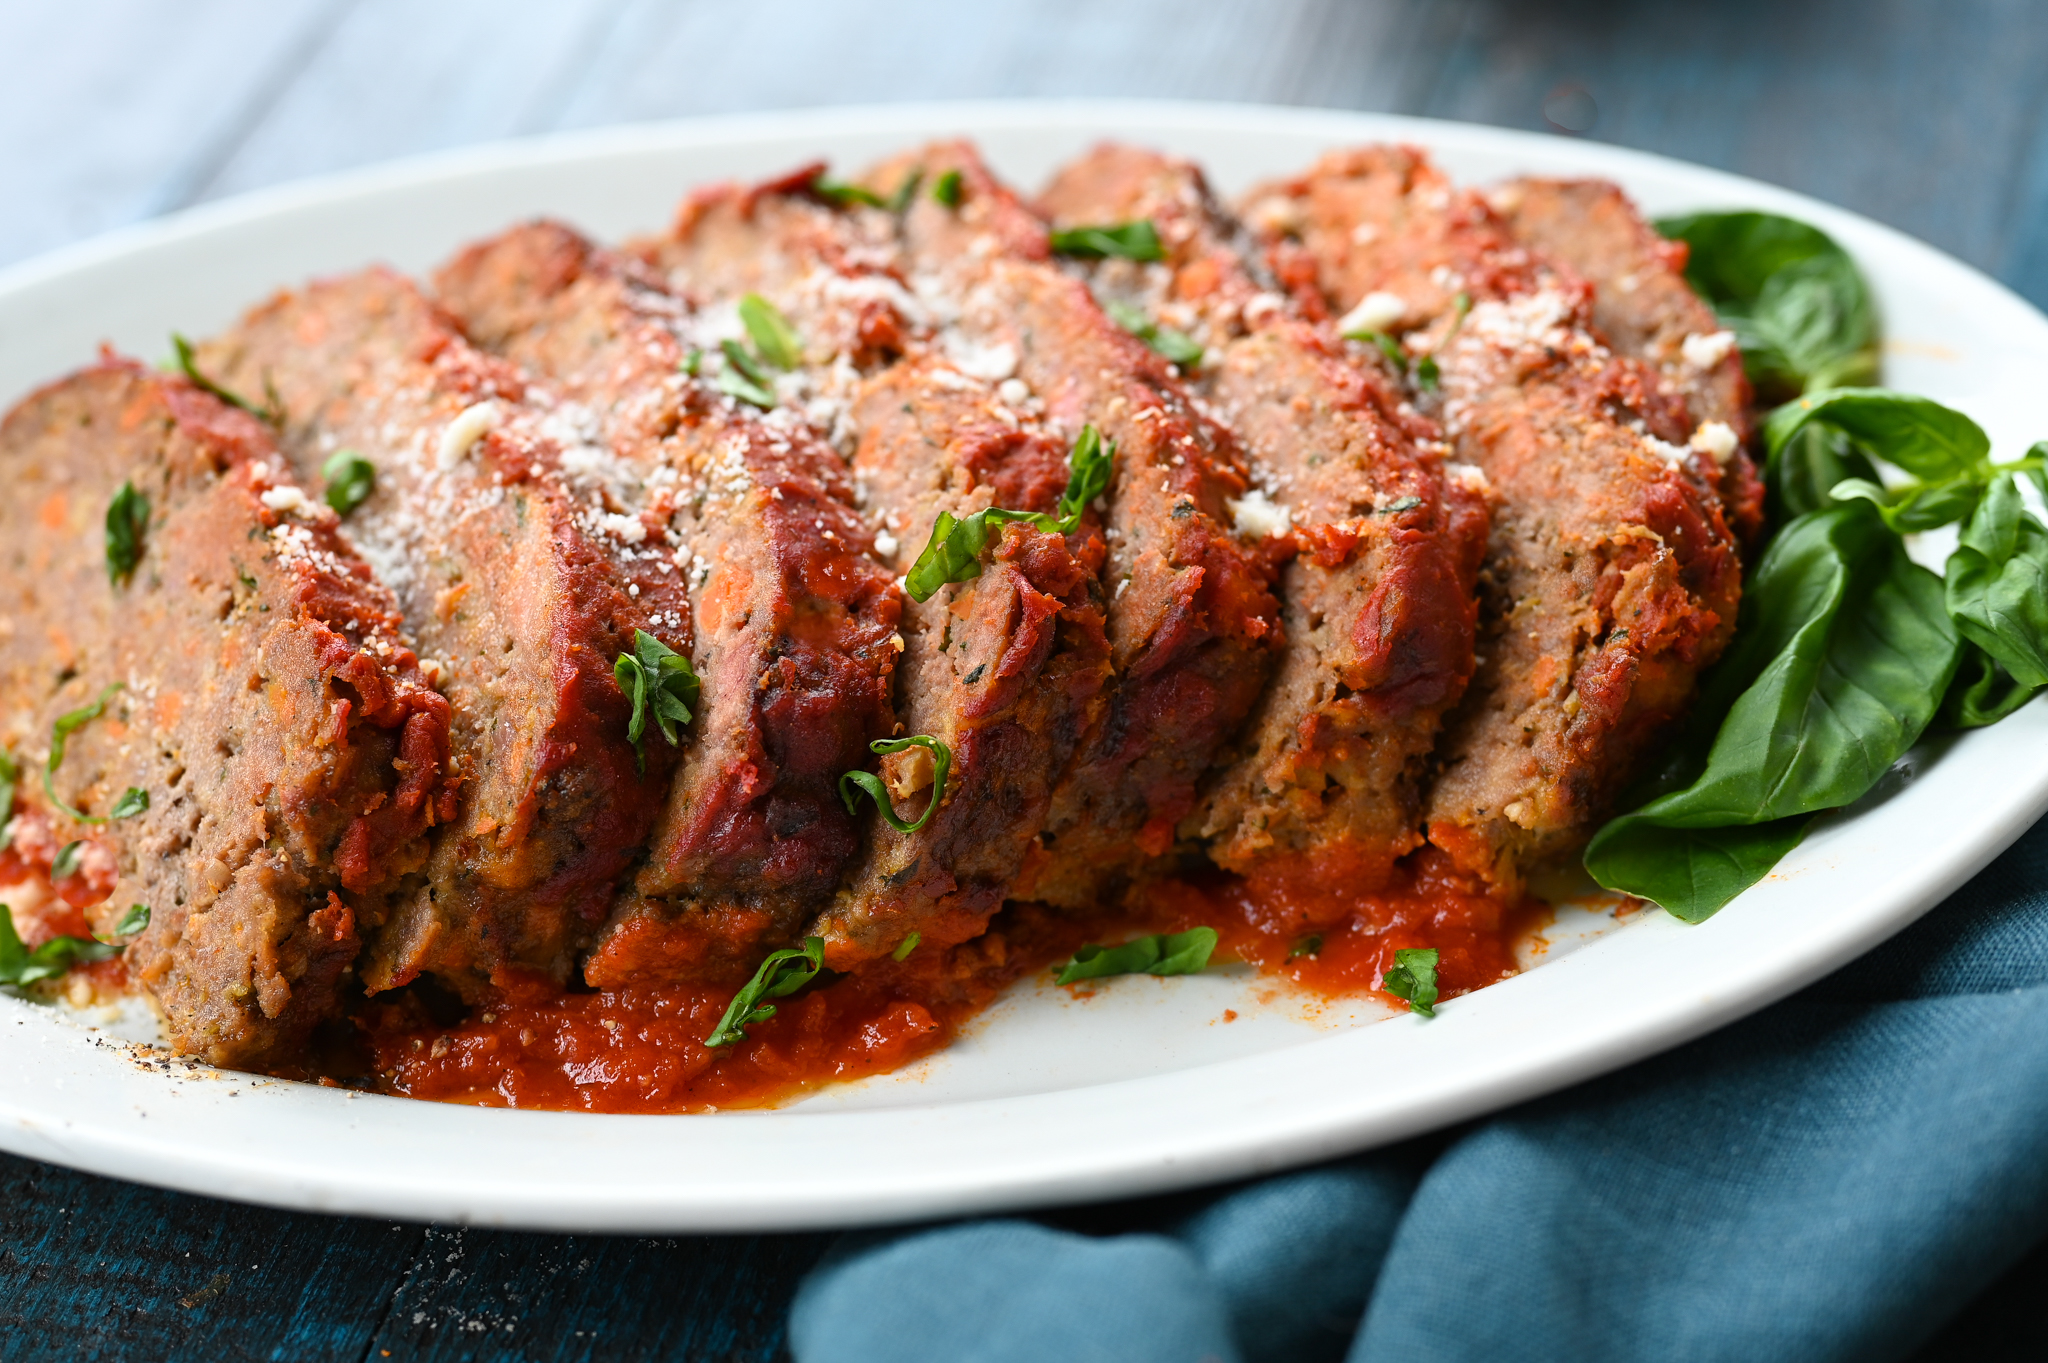 Italian Turkey Meatloaf